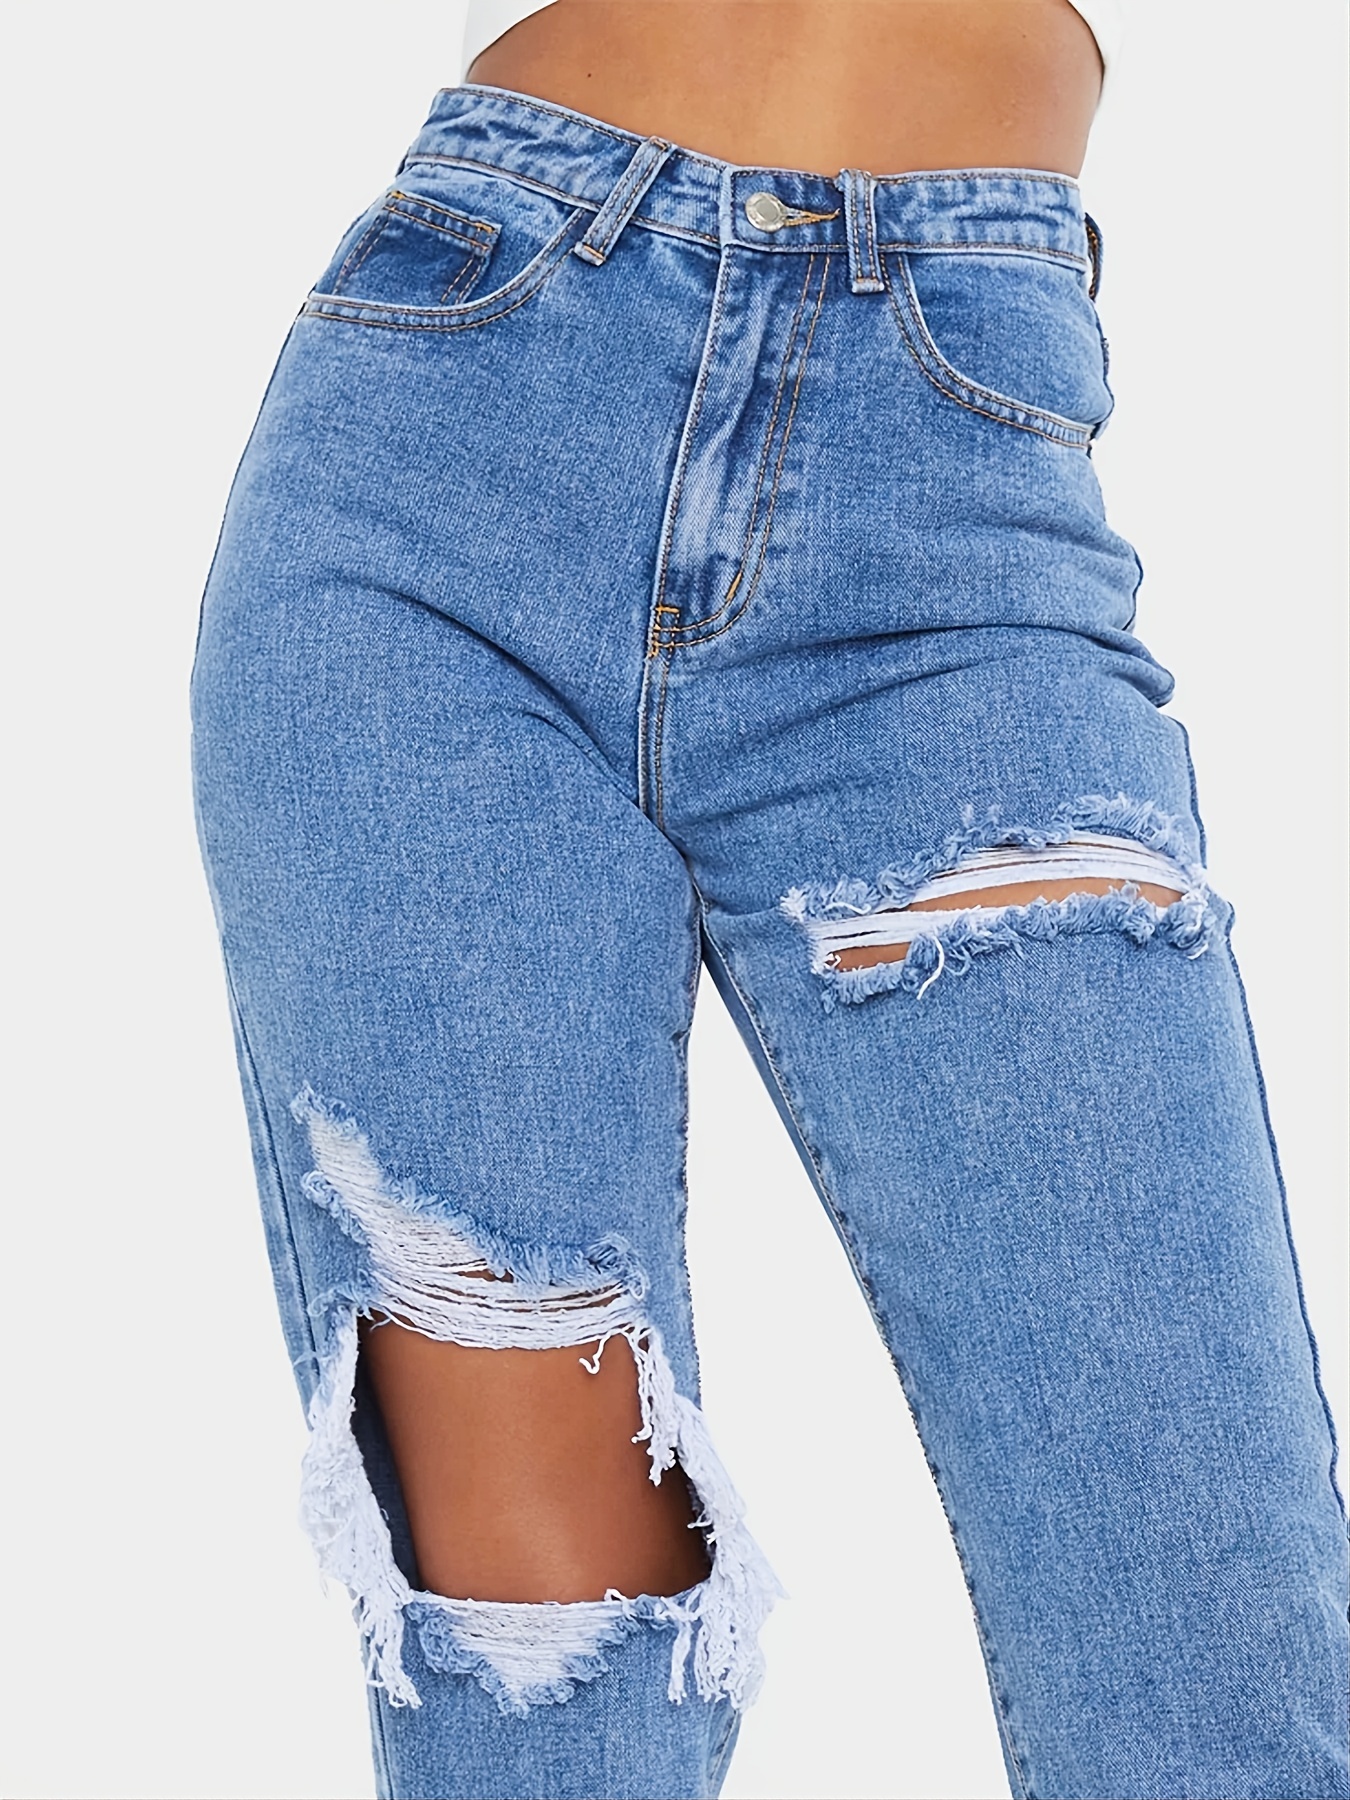 Blue Ripped Mom Jeans, pantalones de mezclilla de talle alto con cintura  alta y pierna recta con bolsillos oblicuos desgastados, jeans y ropa de  mujer